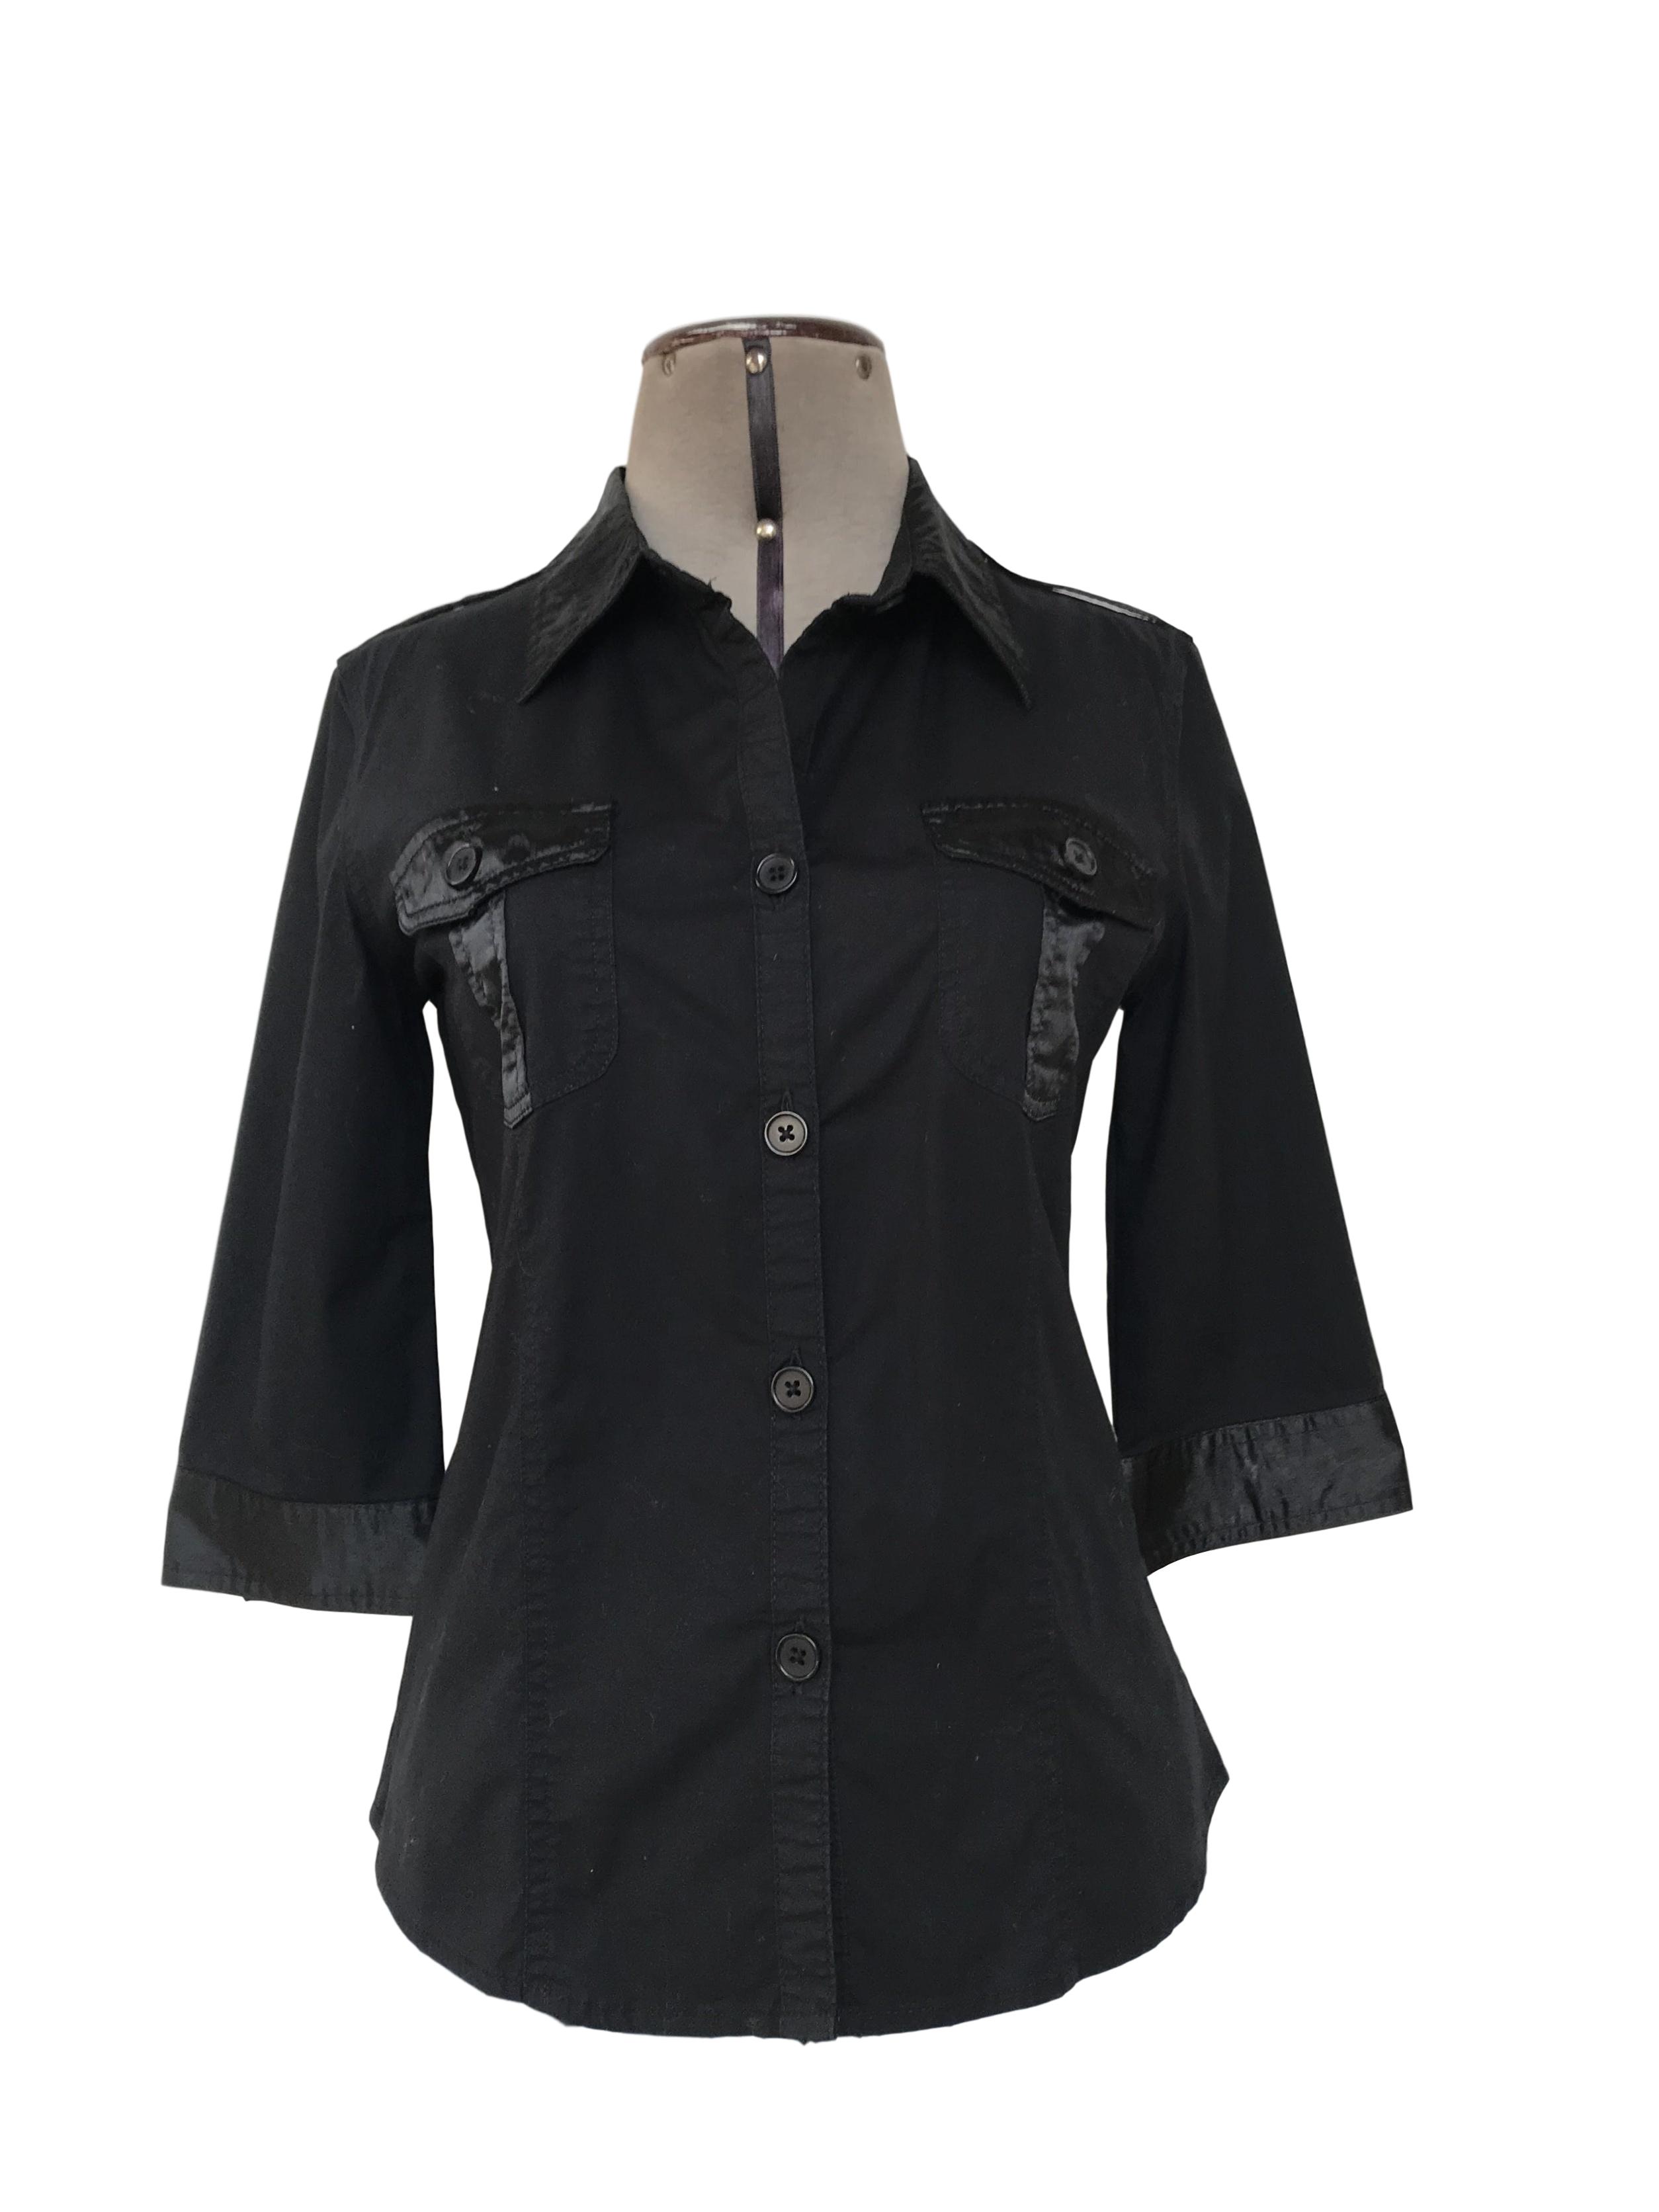 Blusa 96% algodón negro con aplicaciones de tela satinada, cuello camisero, manga 3/4 bolsillos parche en el pecho y botones al tono.Talla S